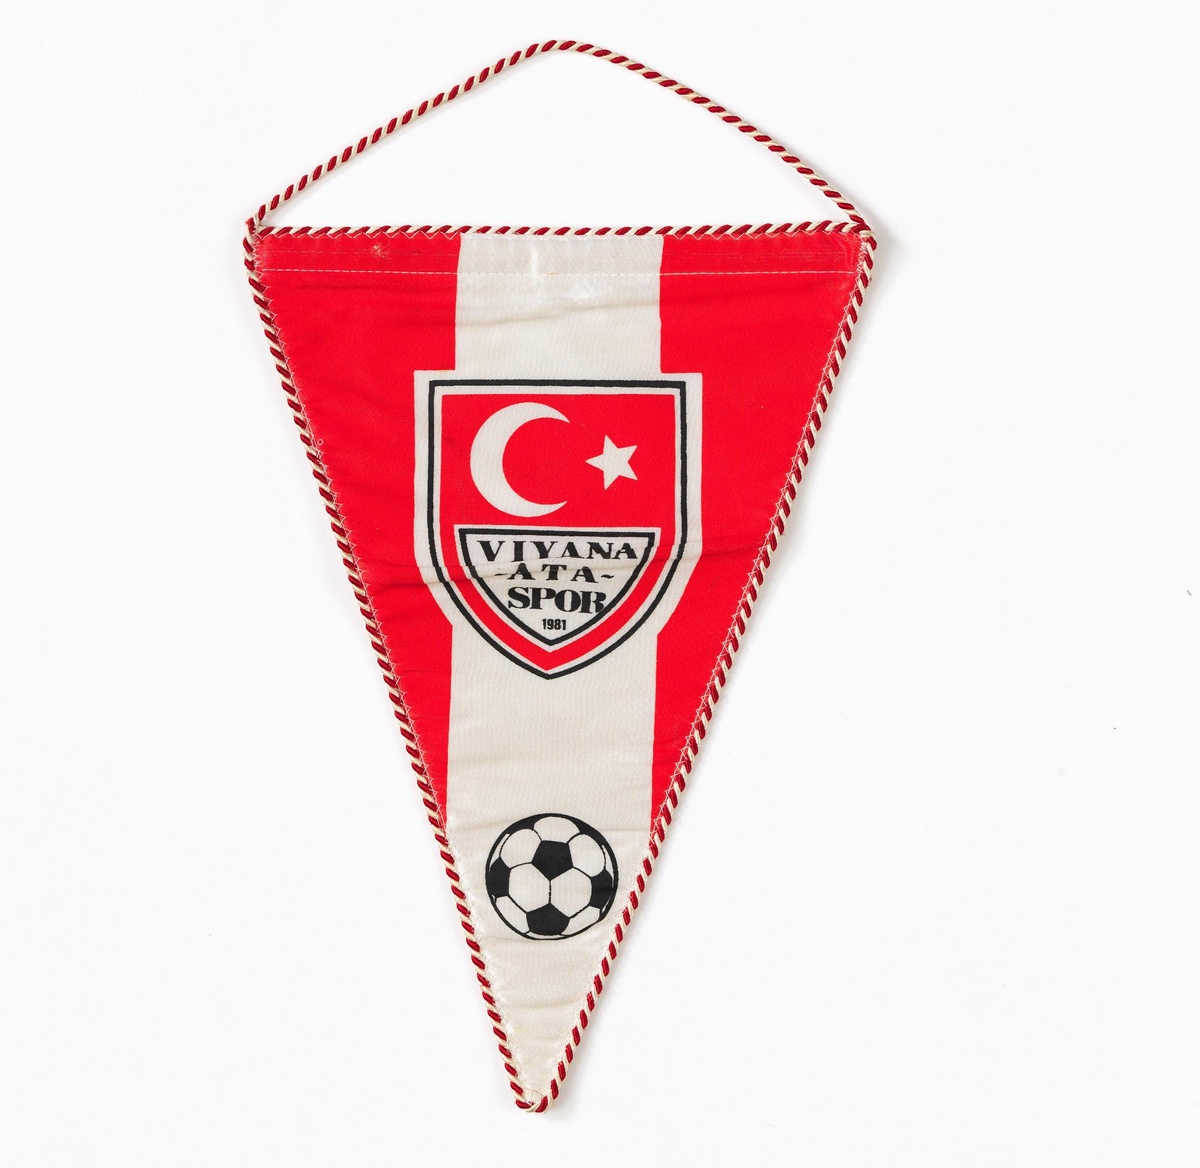 Rot-weiß-roter Wimpel mit einem kleinen Wappen in der Mitte. Auf dem Wappen ist die türkische Fahne mit rotem Hintergrund und weißem Stern und Halbmond abgebildet. Unten auf dem Wimpel ist ein kleiner Fußball abgebildet.  © CC BY 4.0 Wien Museum, Foto: Birgit und Peter Kainz. 